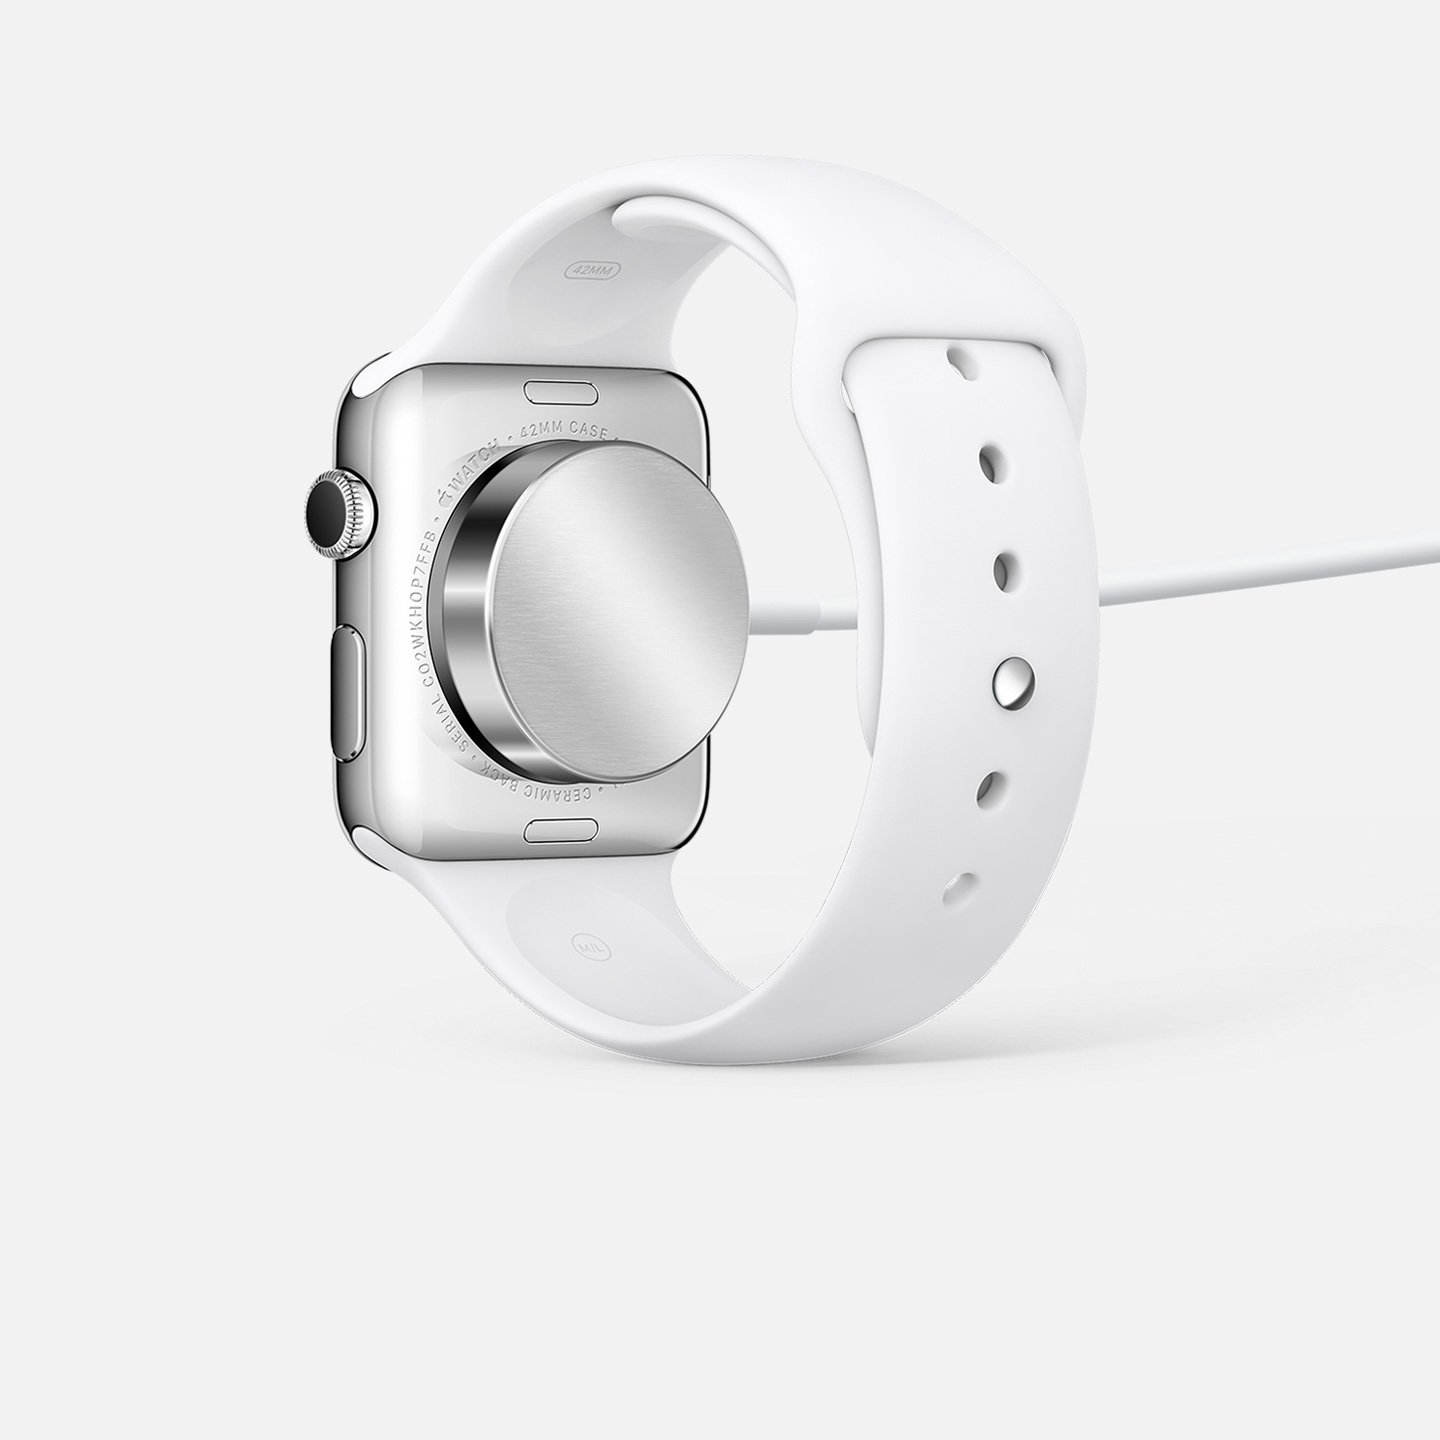 Cable de carga magnética para el Apple Watch (1 metro)